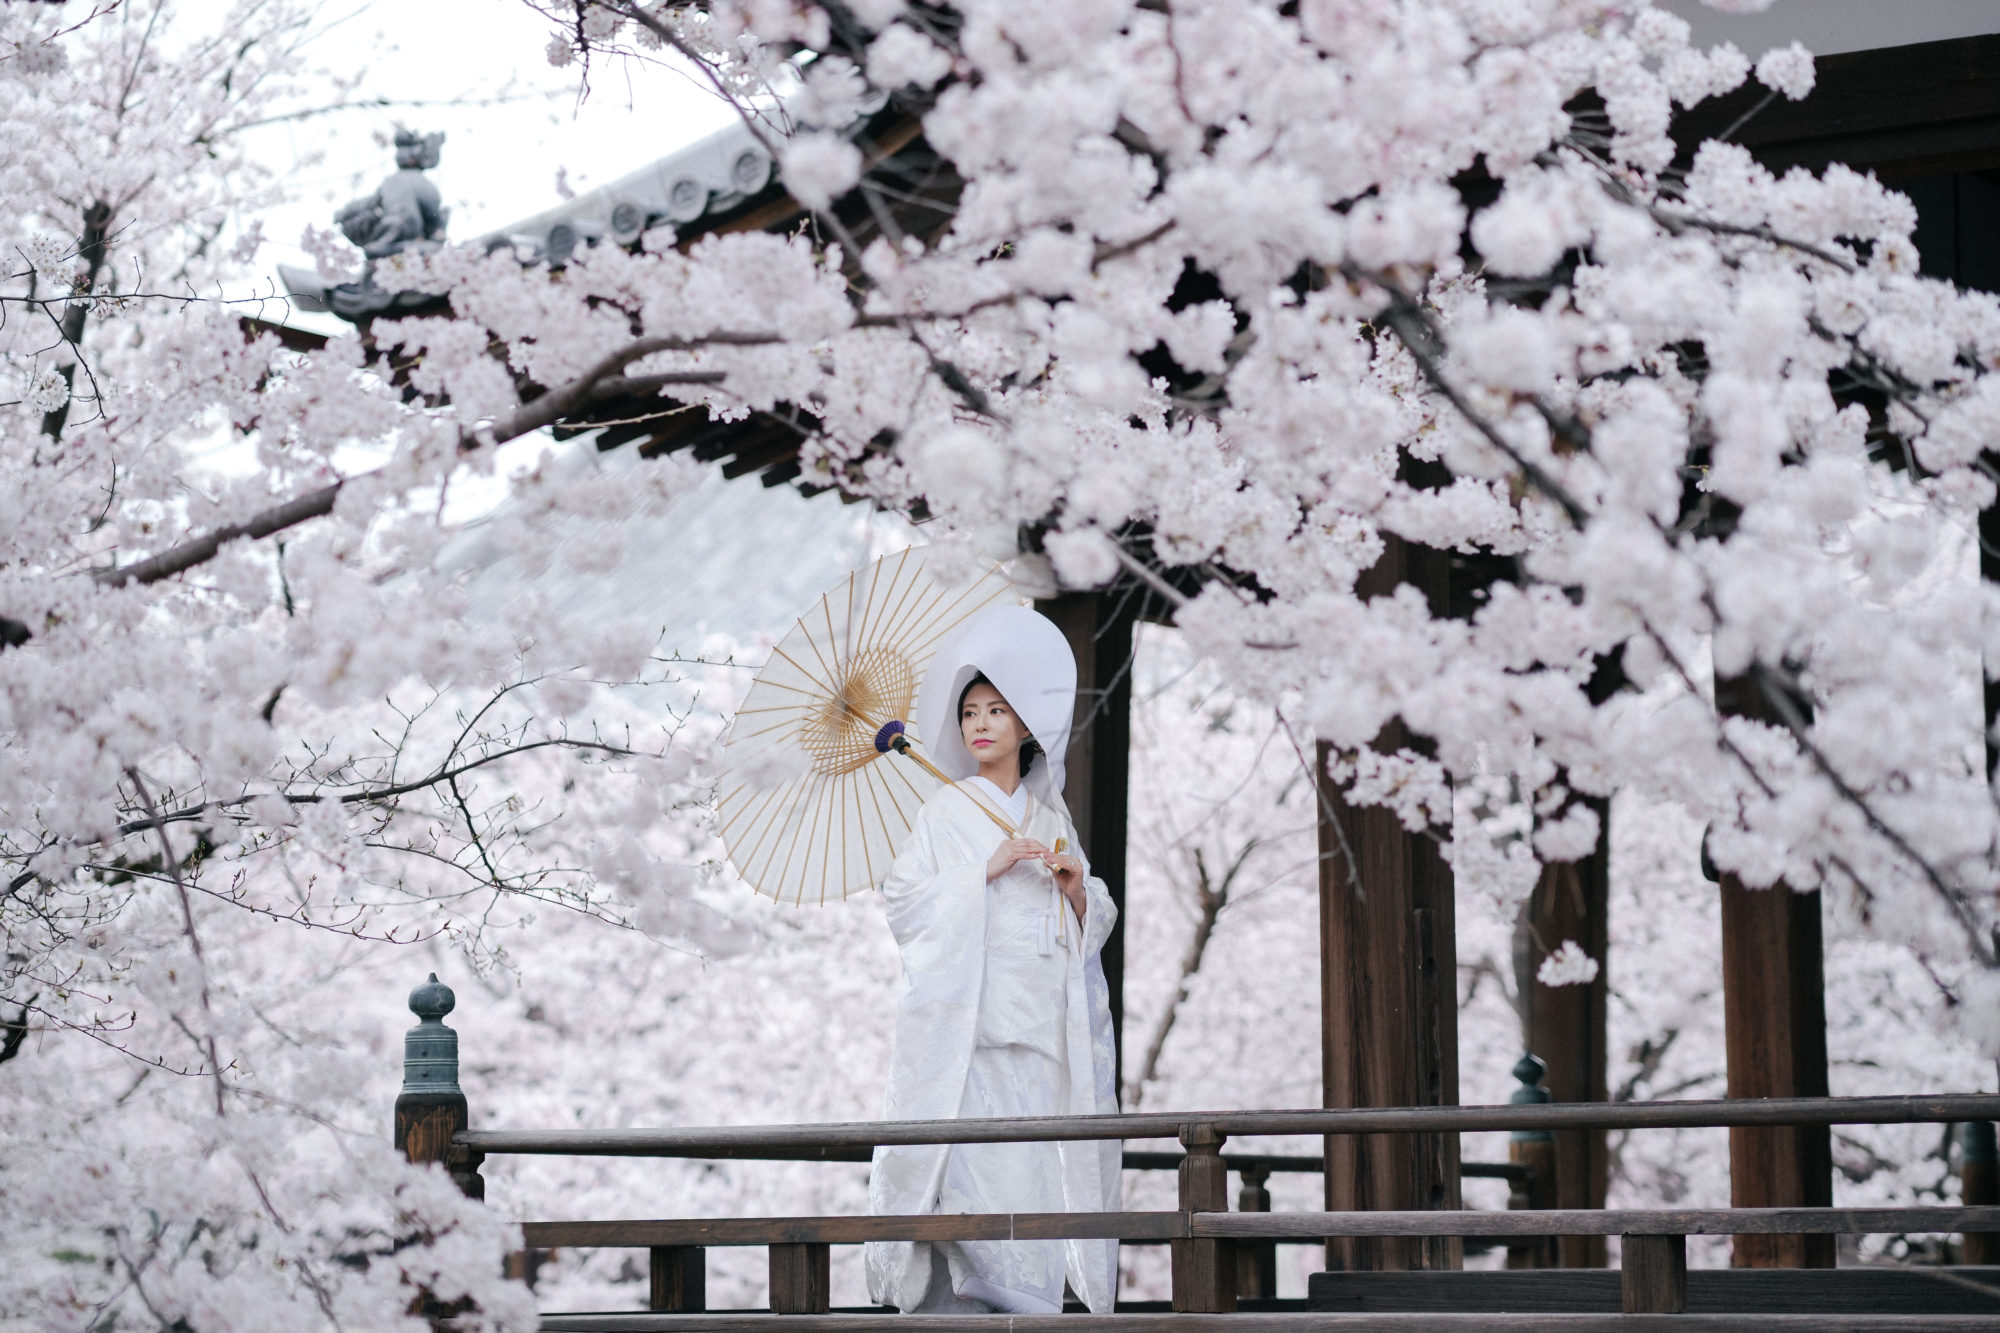 おすすめの寺院「立本寺」で、桜に囲まれた前撮りを行う白無垢の新婦。